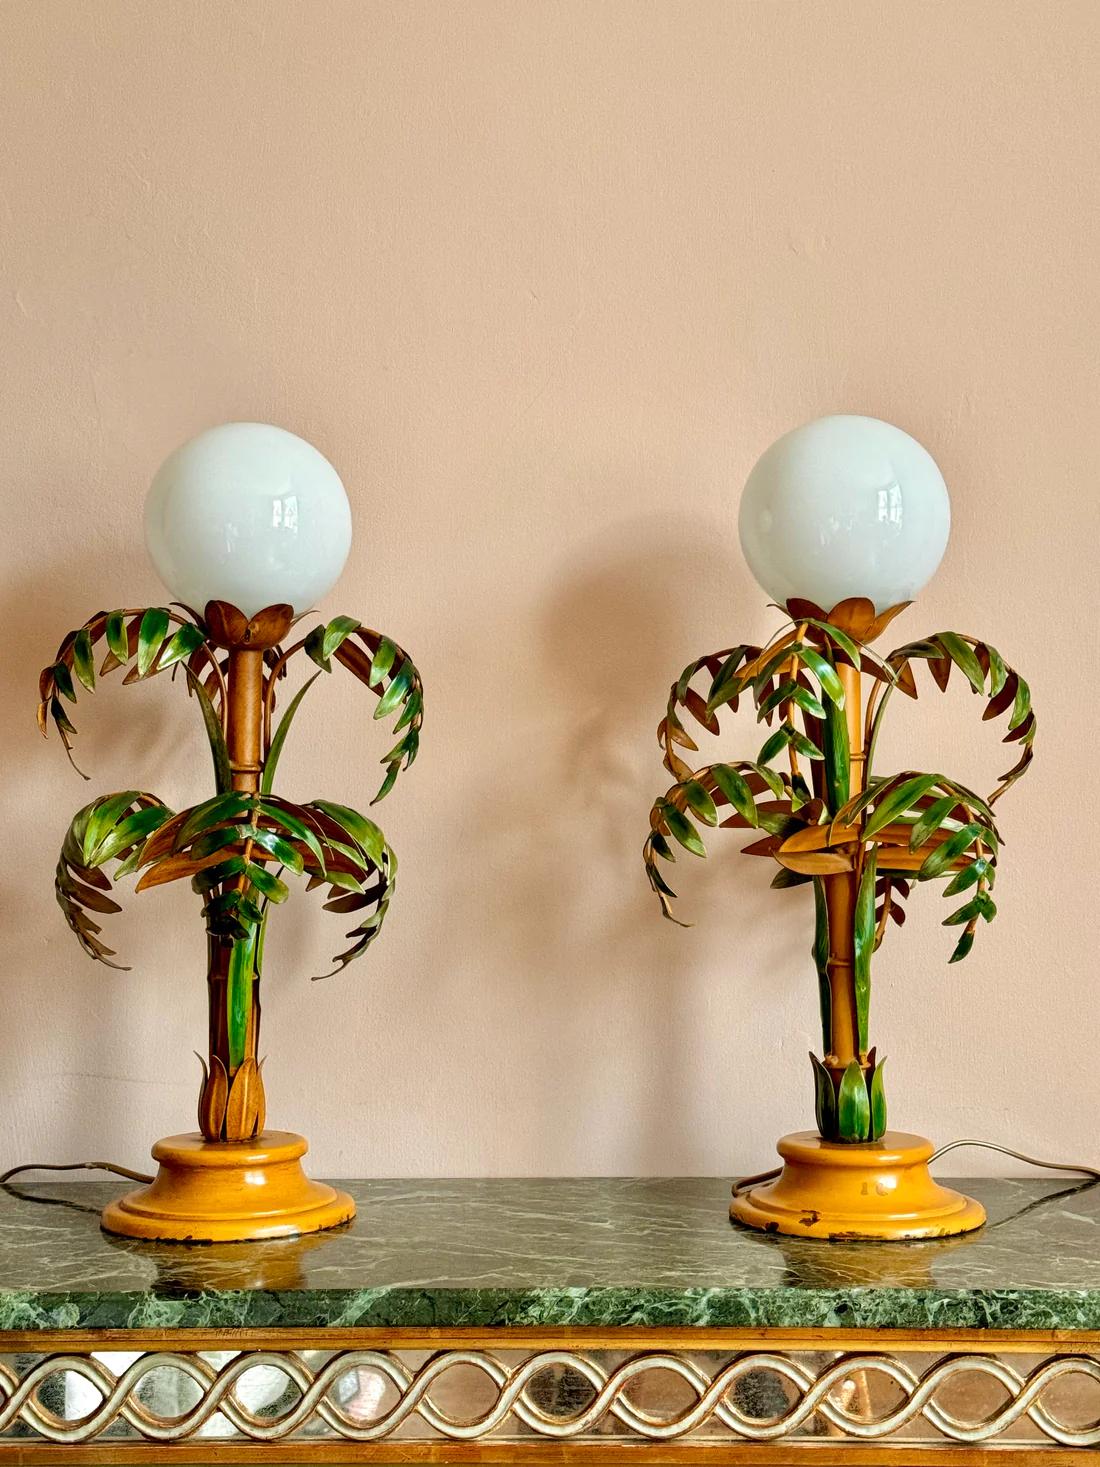 Paire de lampes de table en bambou tolé italien des années 1940.

Magnifiques et rares lampes peintes à la main avec des abat-jours en verre blanc. En très bon état avec une usure légère et attrayante. Les deux lampes ont été recâblées, équipées de